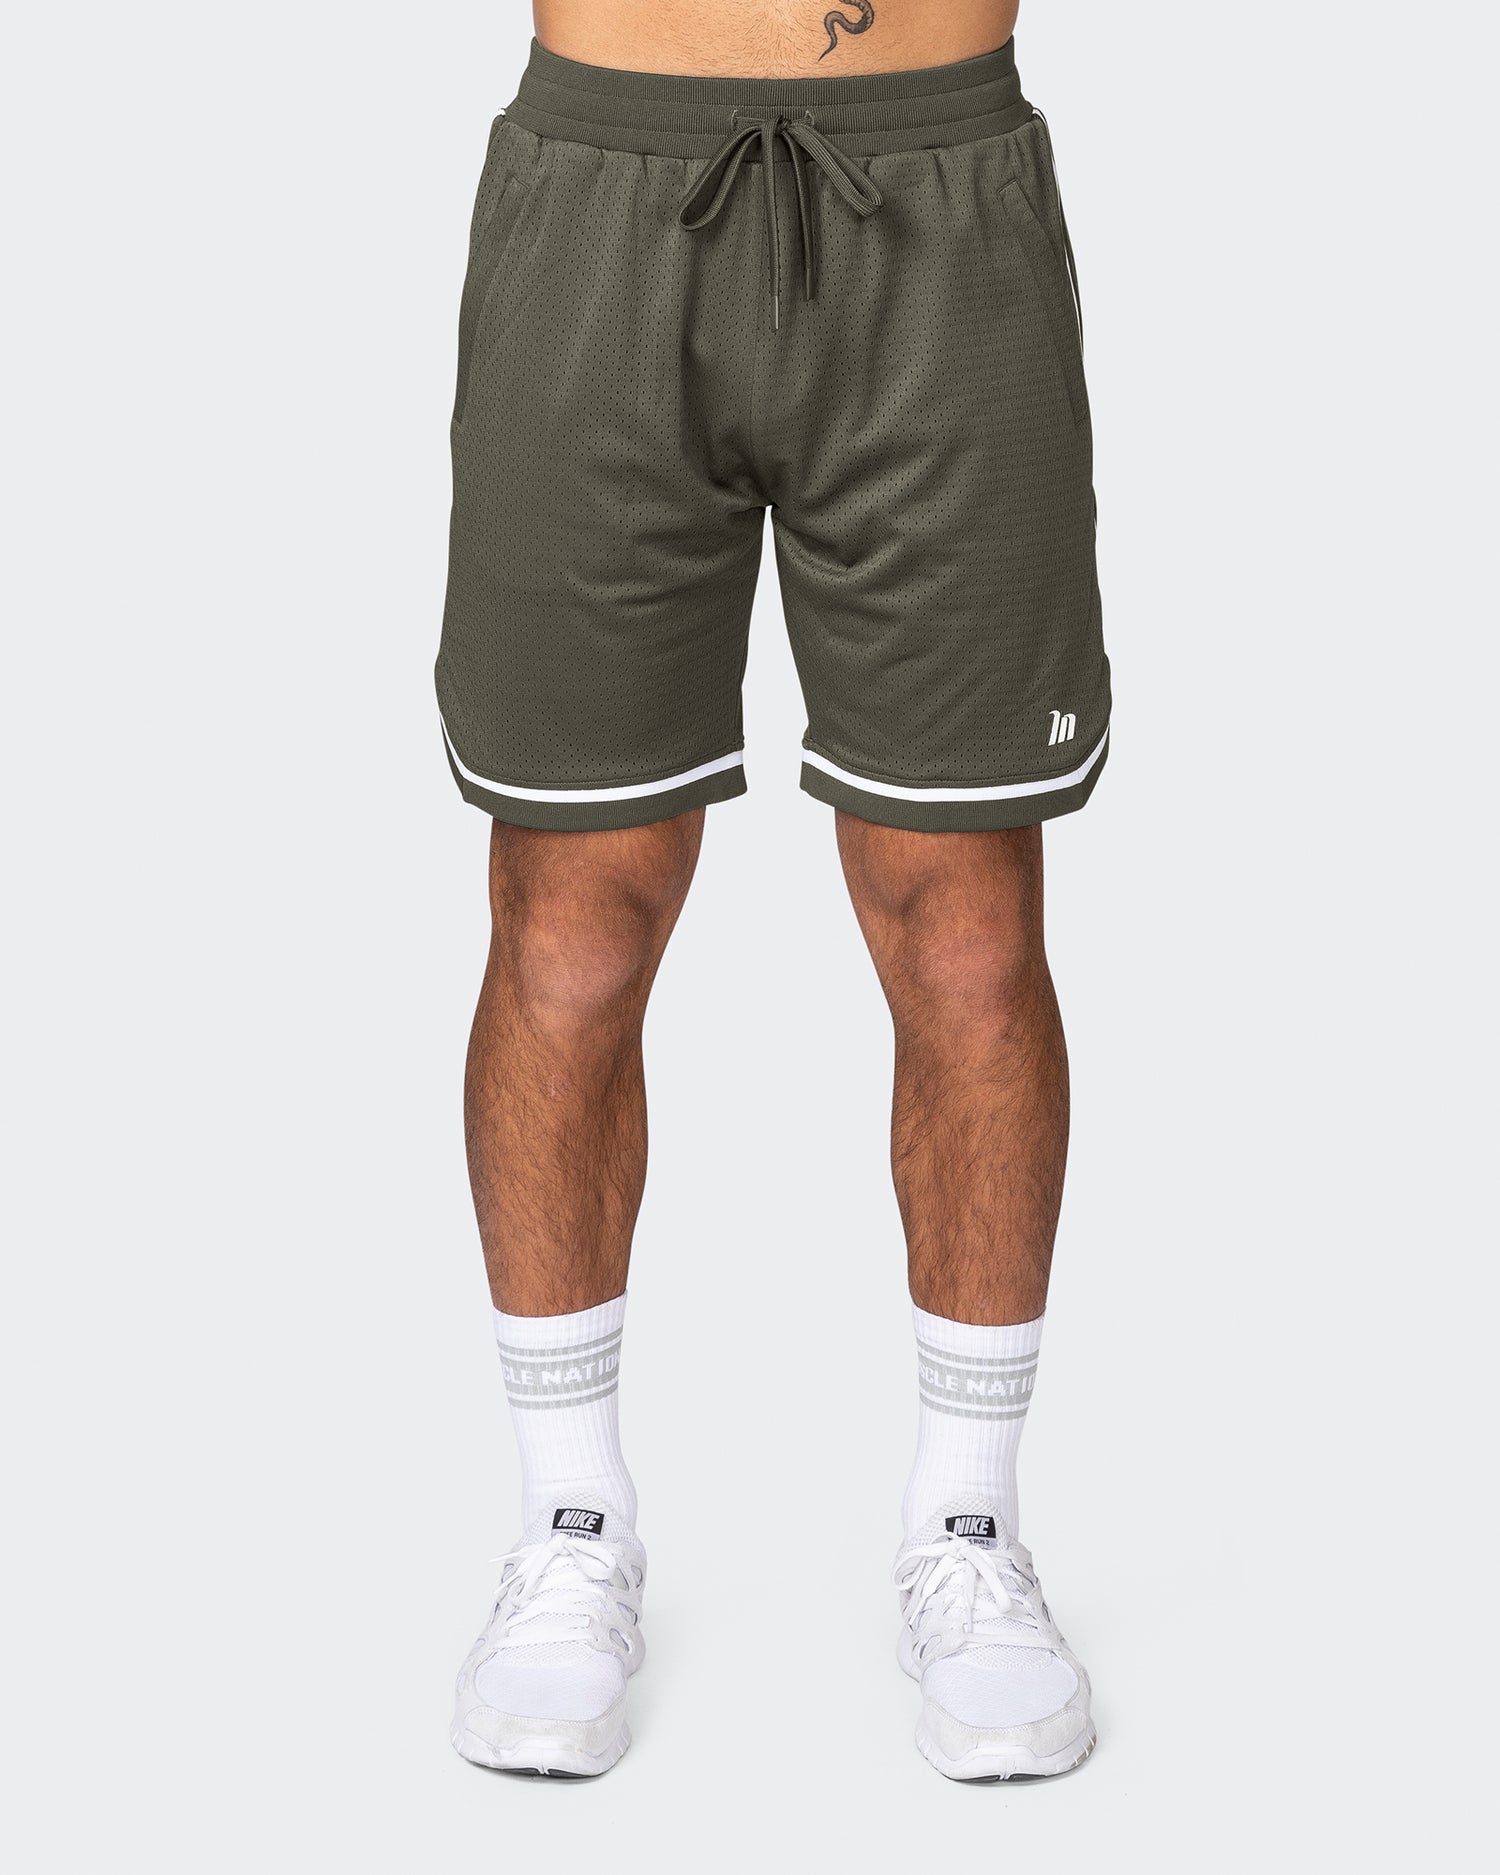 Mens 8" Basketball Shorts - Dark Khaki